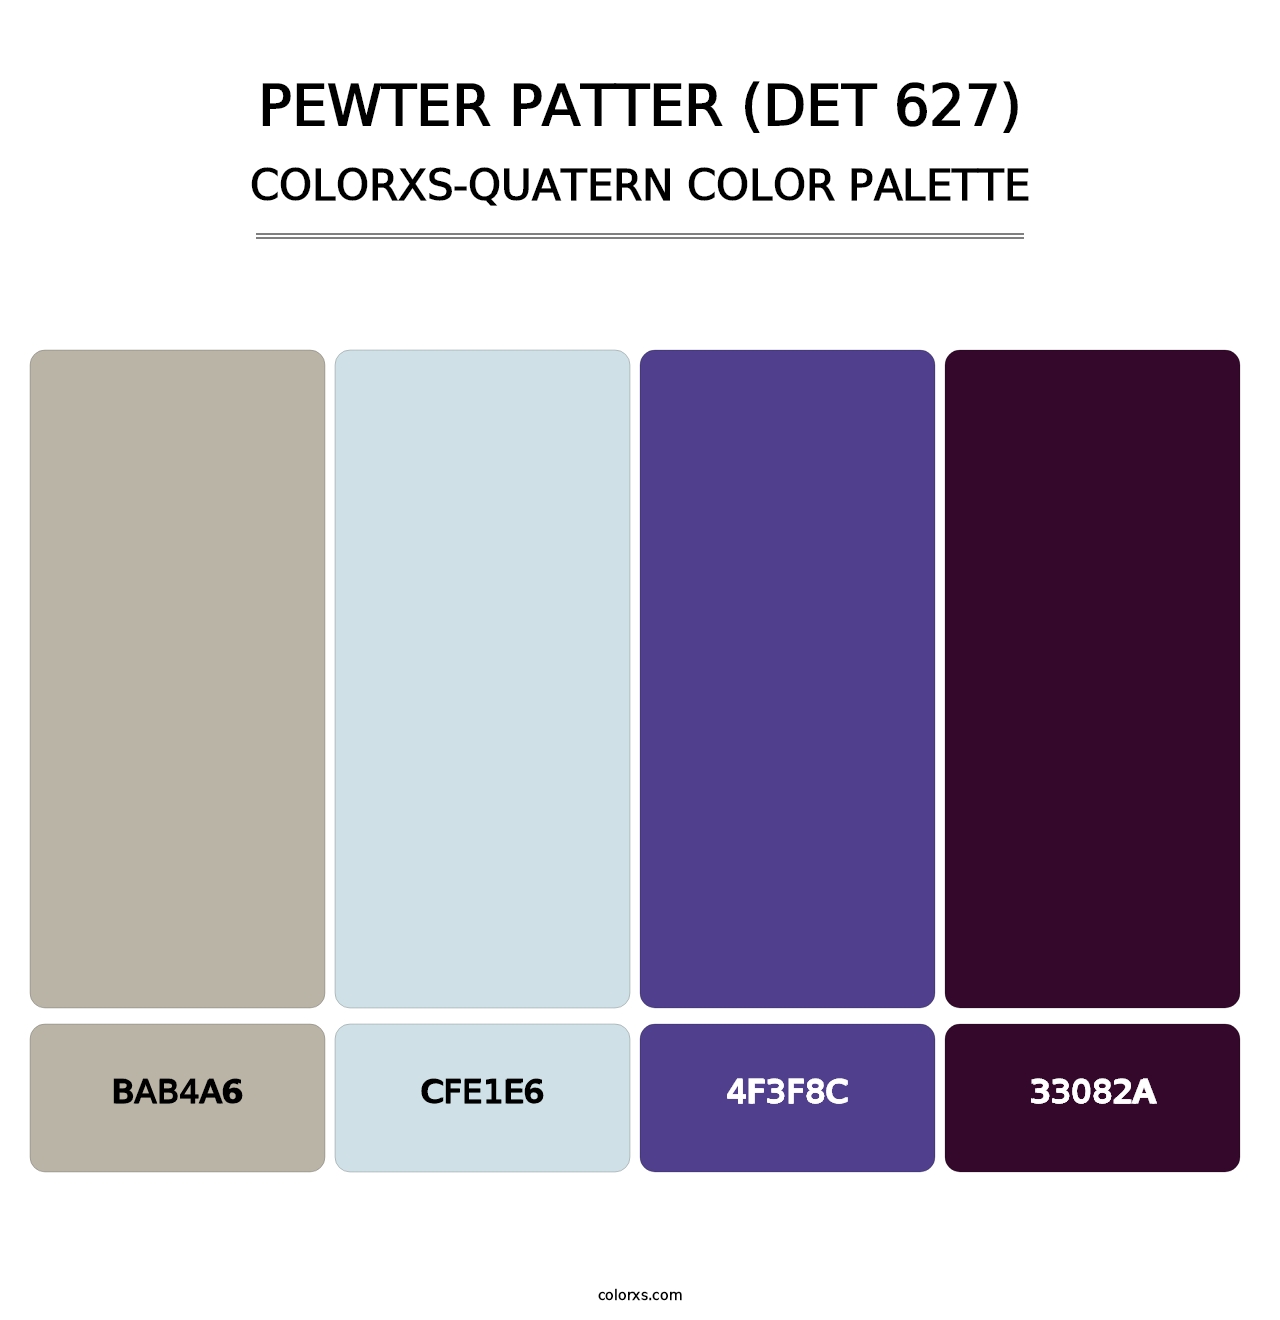 Pewter Patter (DET 627) - Colorxs Quatern Palette